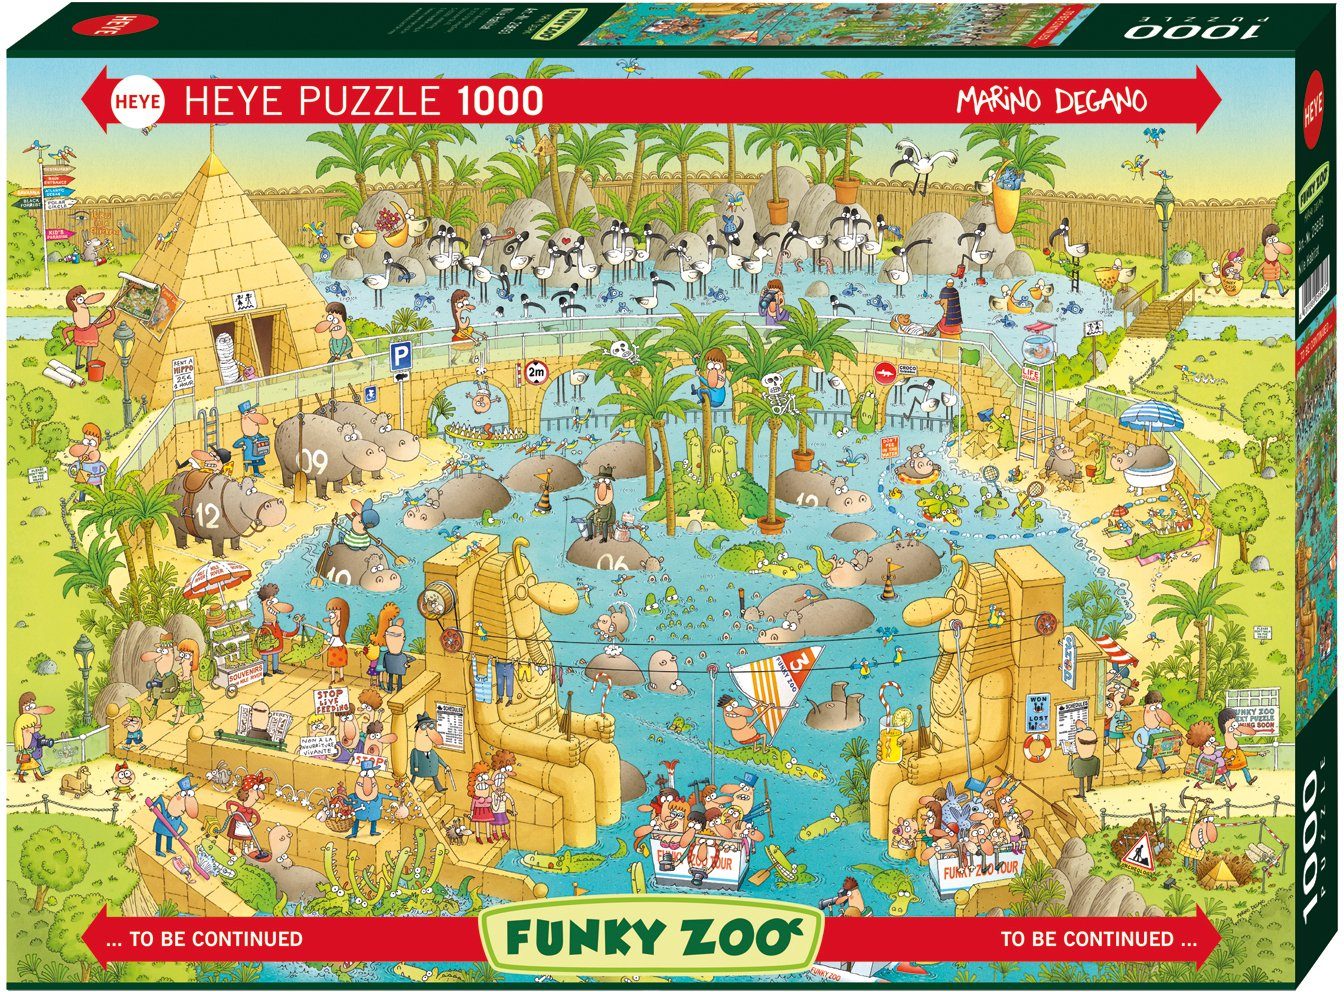 HEYE Puzzle Nile Germany 1000 in Habitat, Puzzleteile, Made